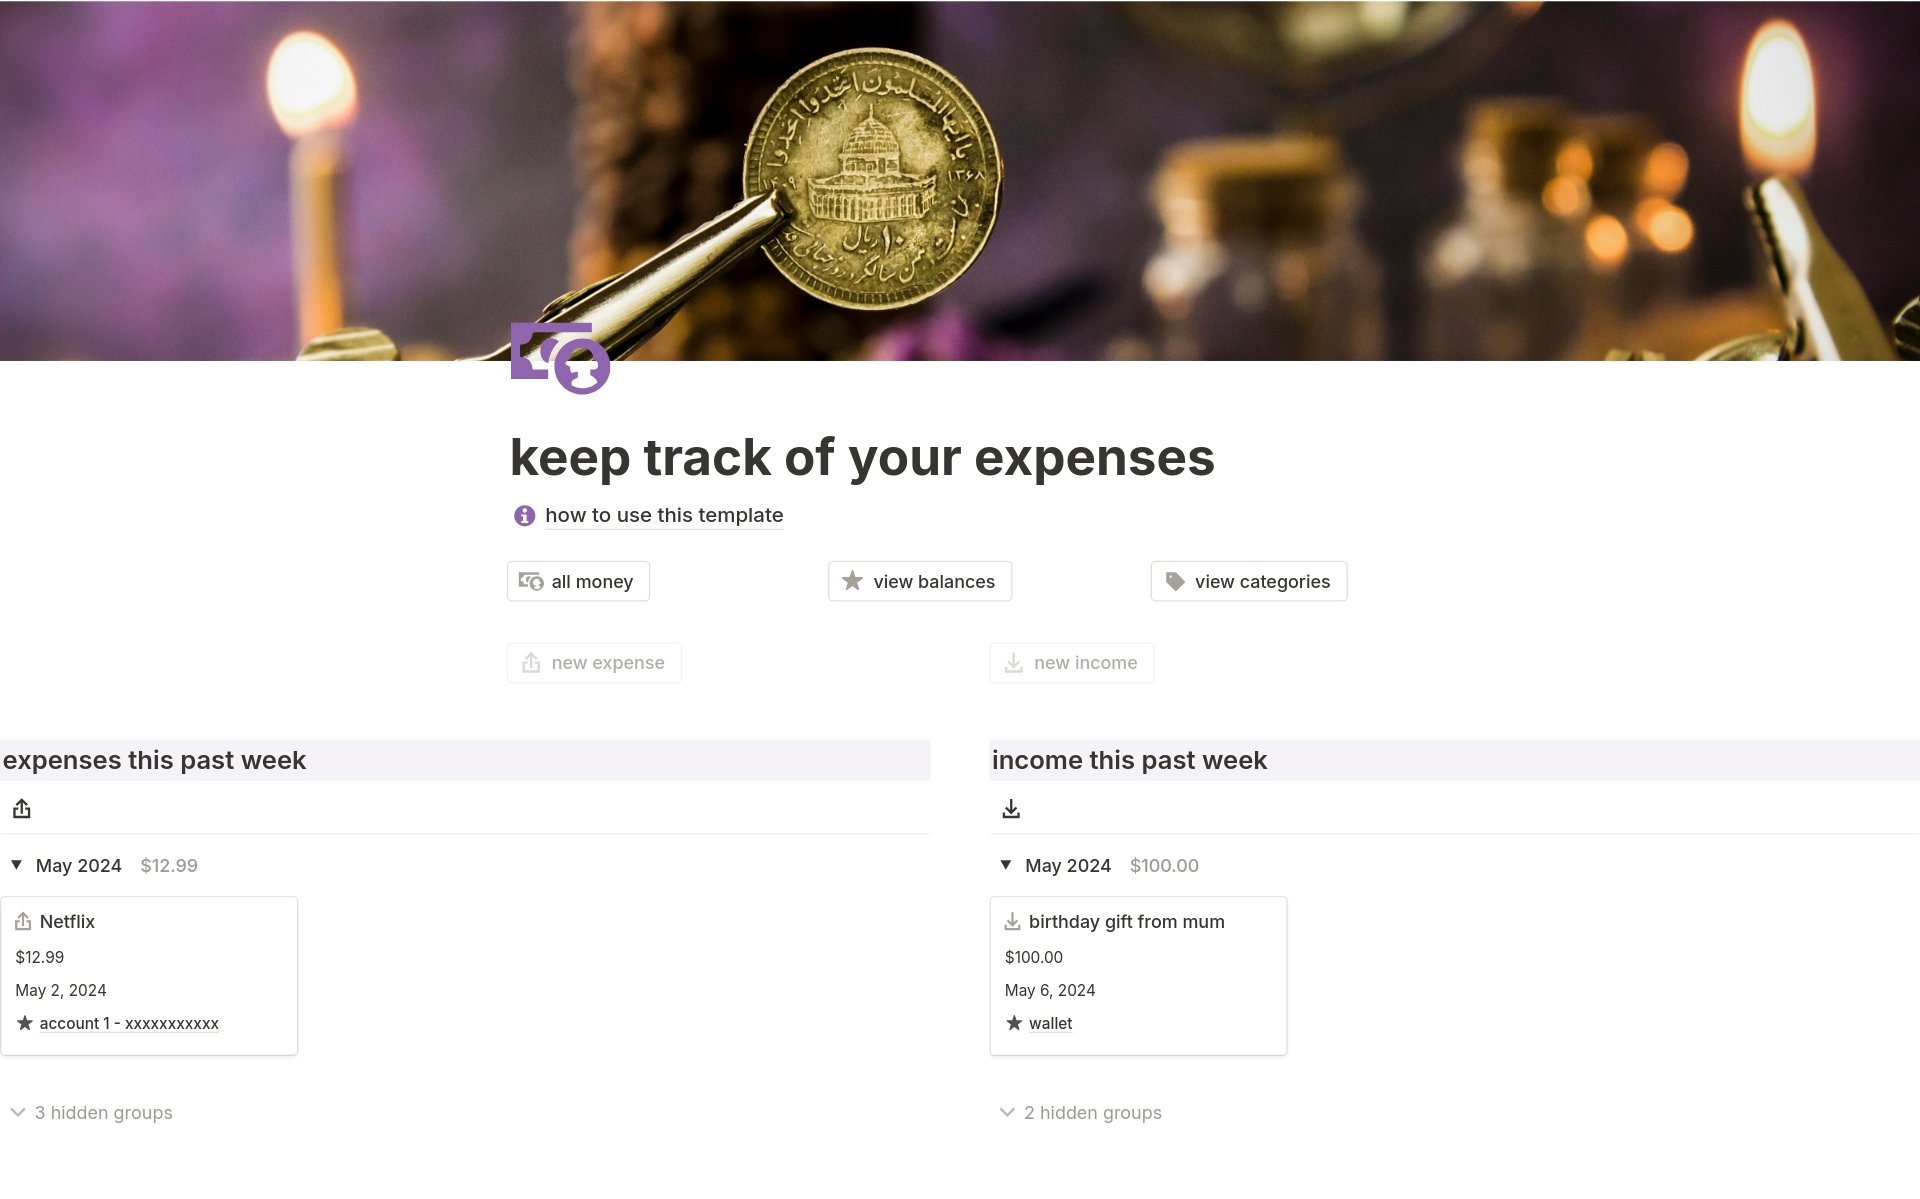 Aperçu du modèle de keep track of your expenses